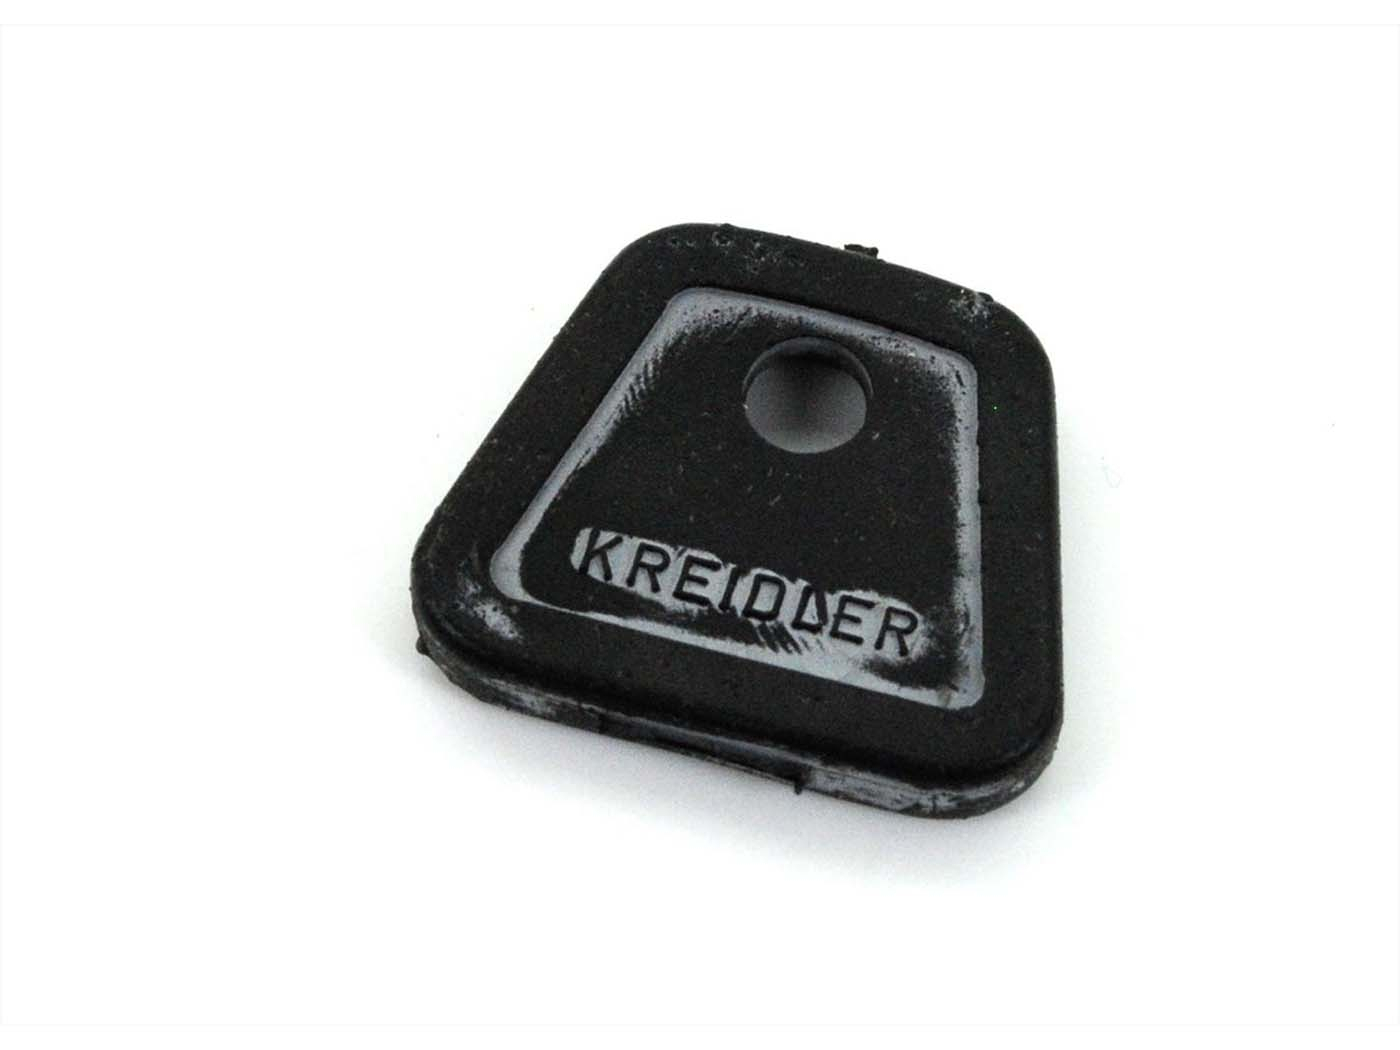 Kreidler Florett RS RMC Ignition Key Cap